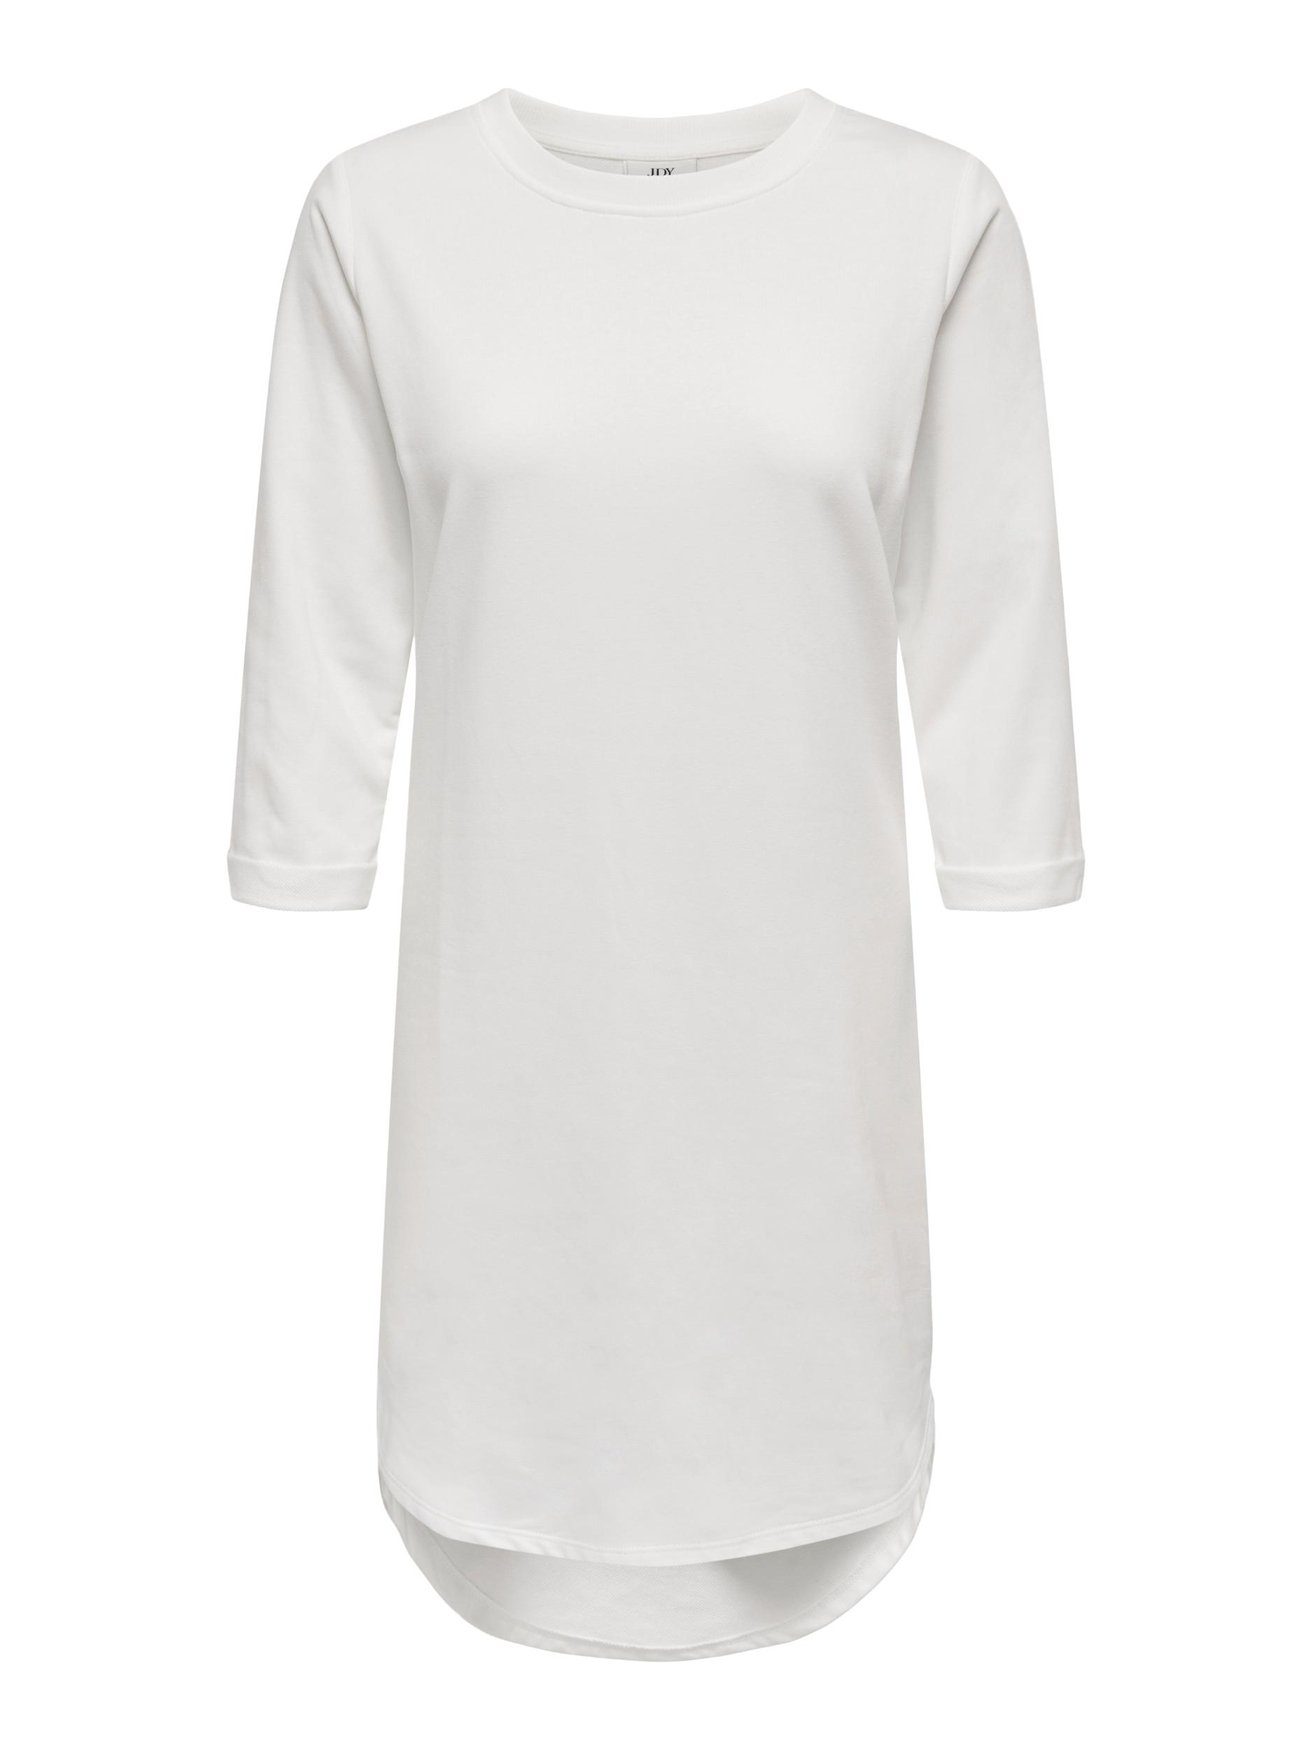 Weiß-3 Kleid in JDYIVY Sweat JACQUELINE (knielang) Shirtkleid 3/4 de Arm Rundhals YONG 5608